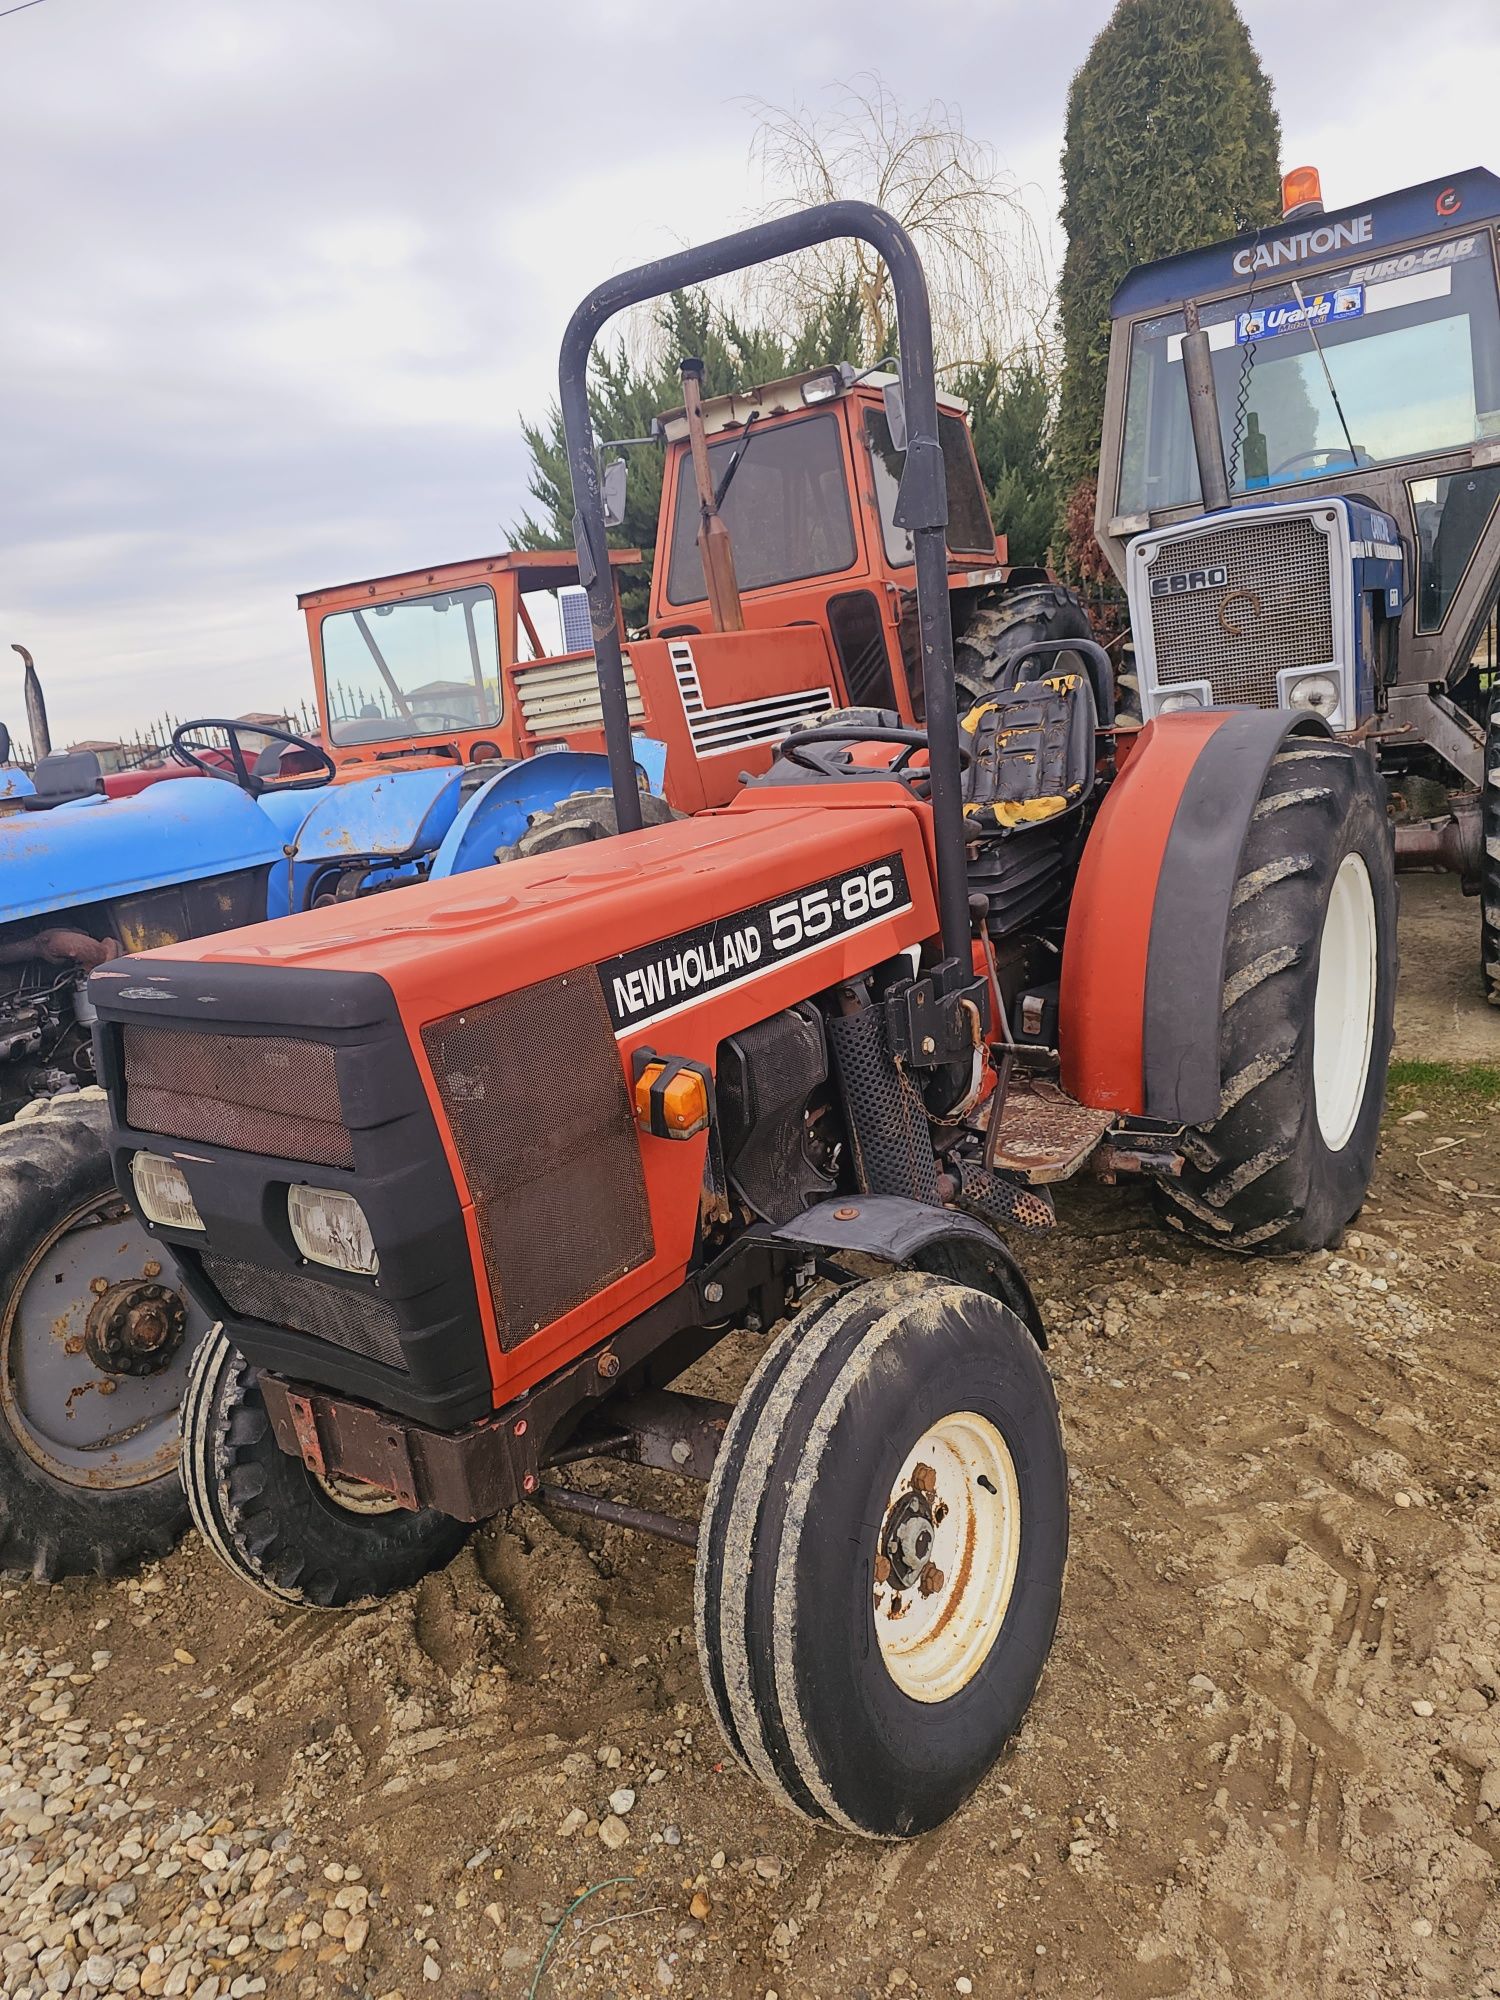 Tractor New Holland 55-86 Viticol Import Italia ‼️